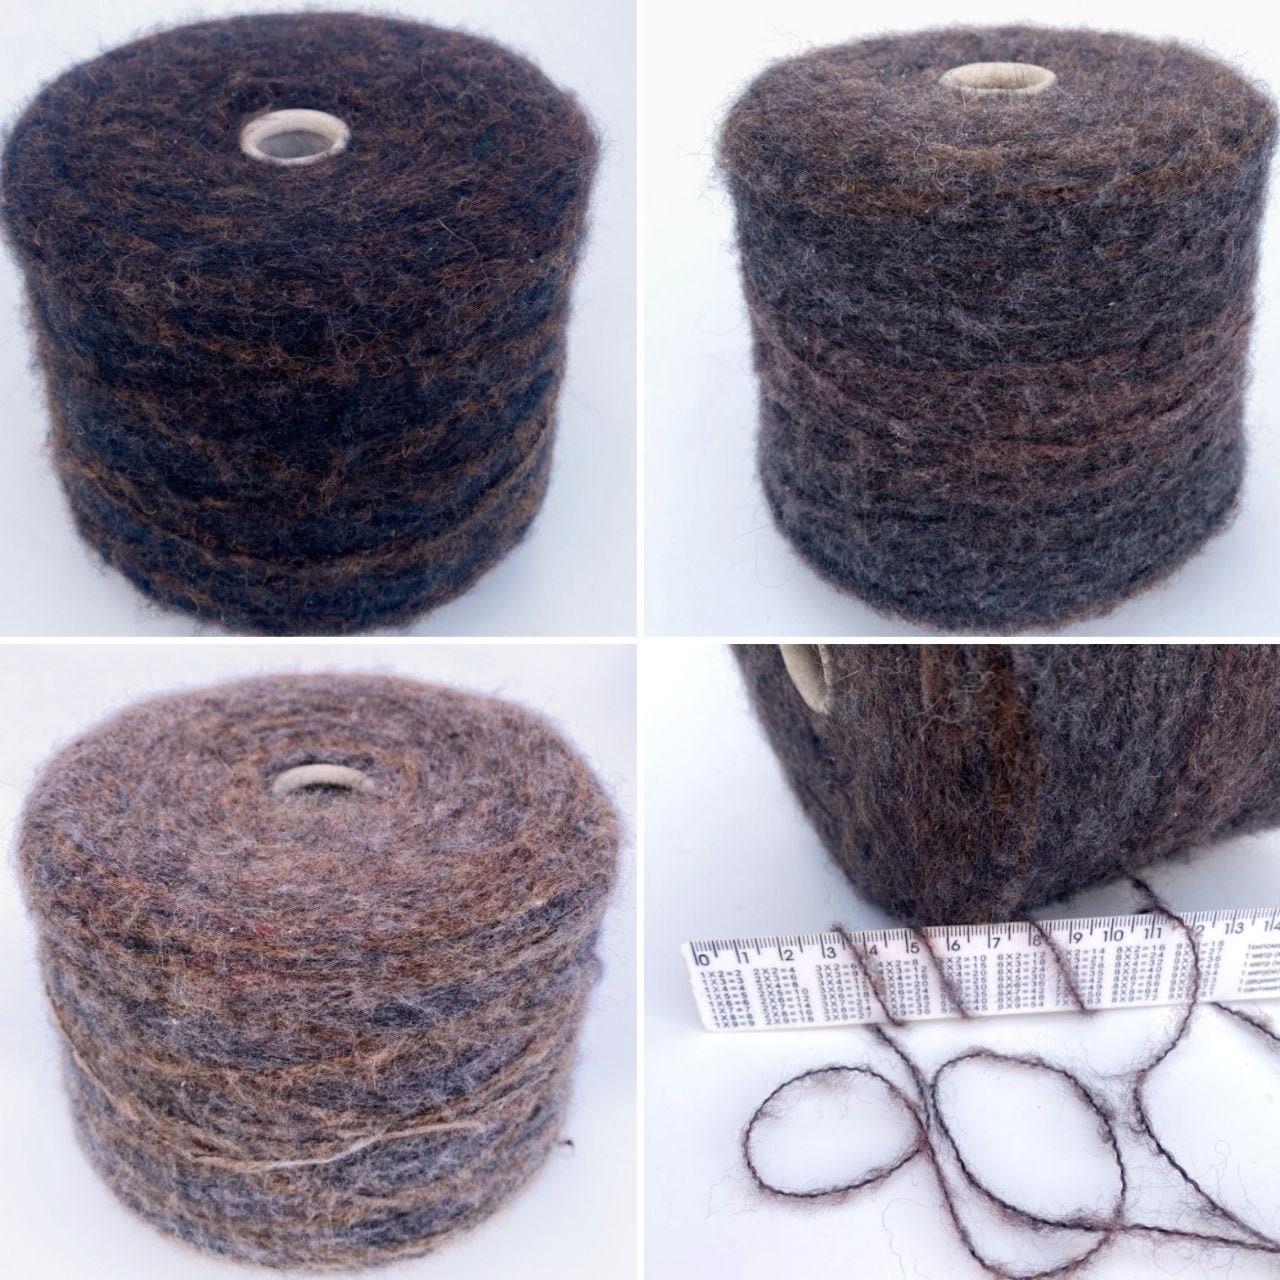 Italian Tape Yarn Cone per 0.88lb / 400g Knitting Crocheting Craft